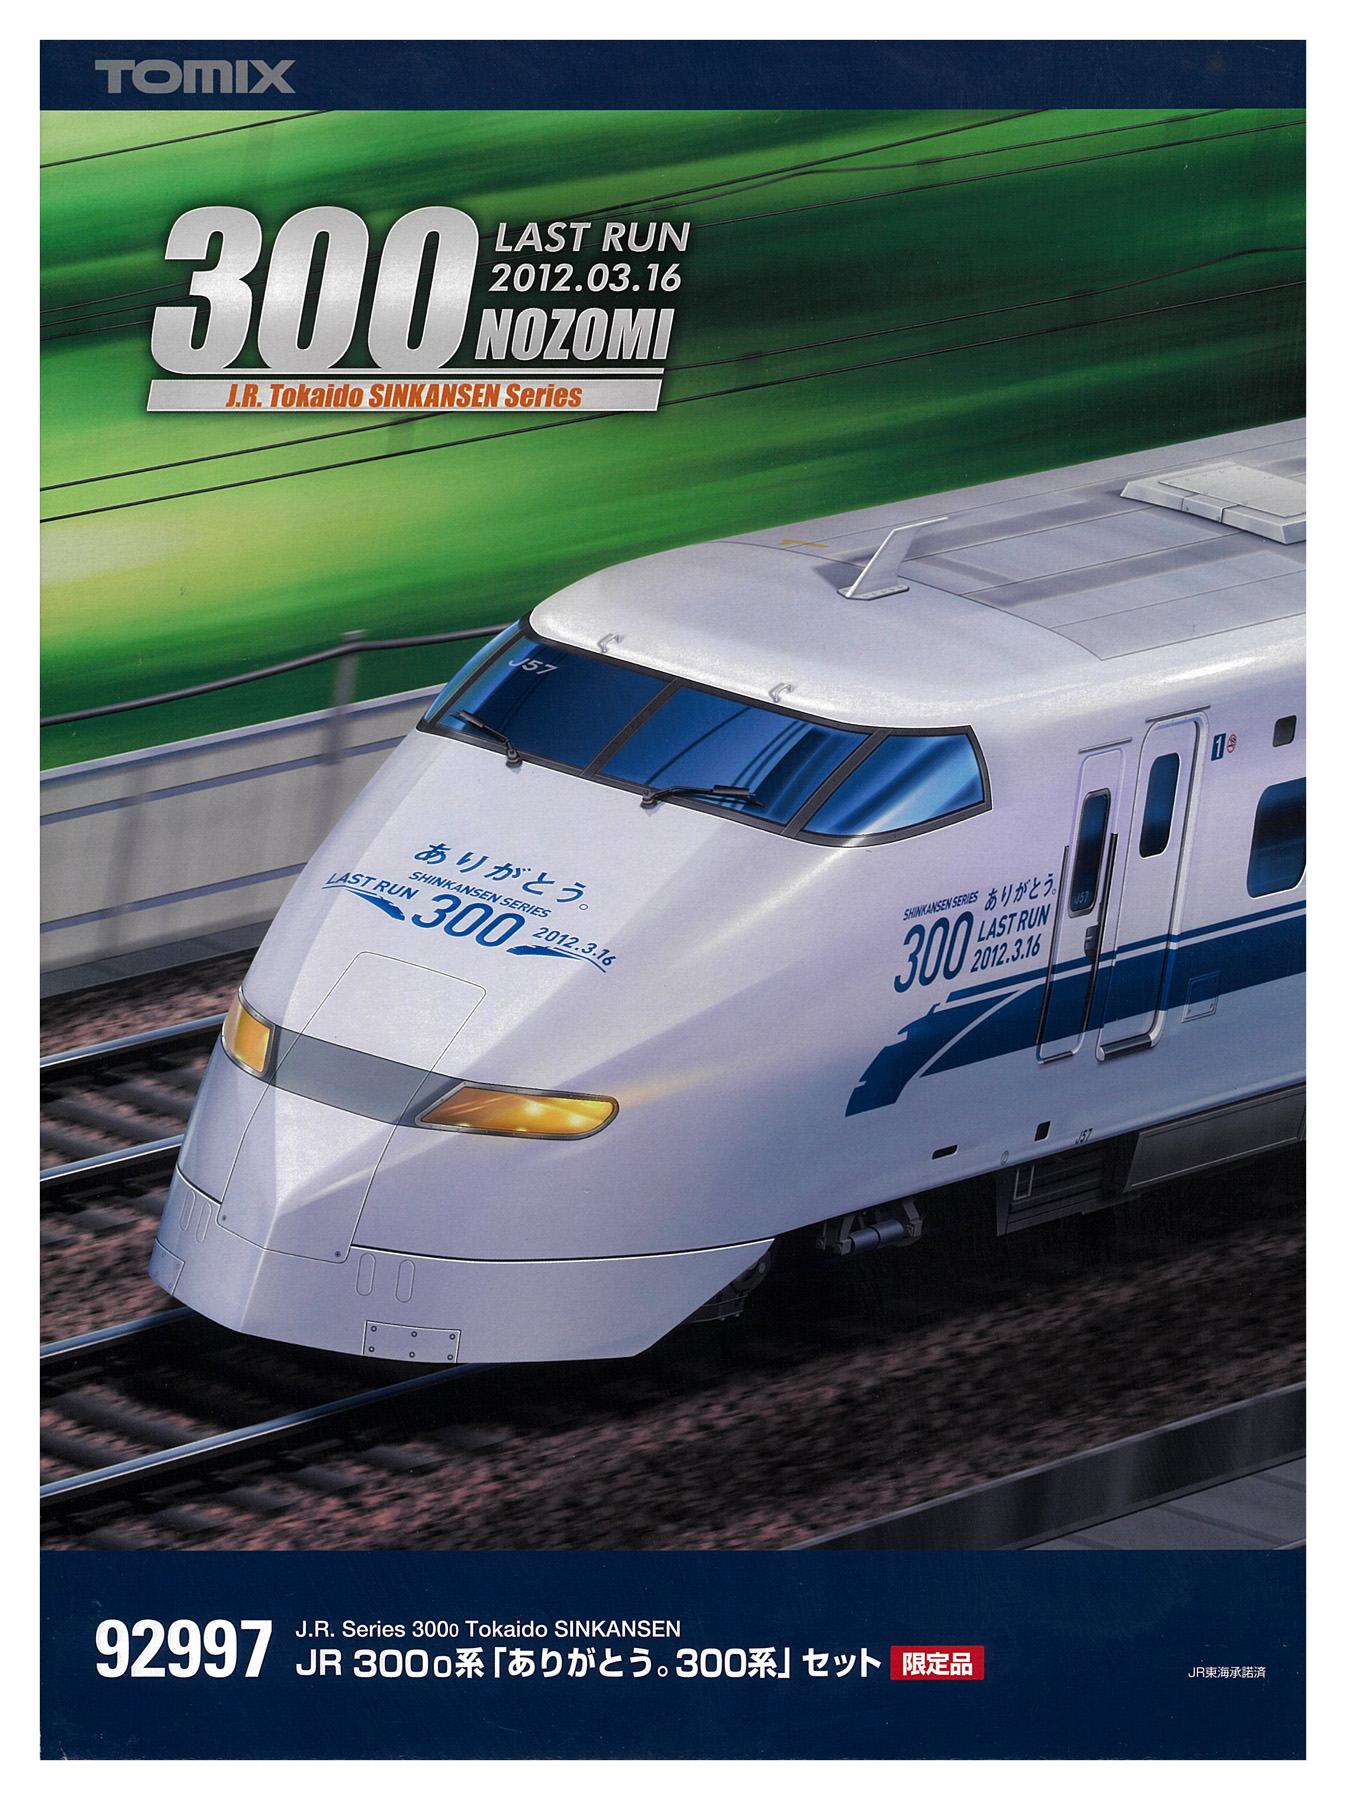 公式]鉄道模型(92997JR 300-0系「ありがとう。300系」16両セット)商品 